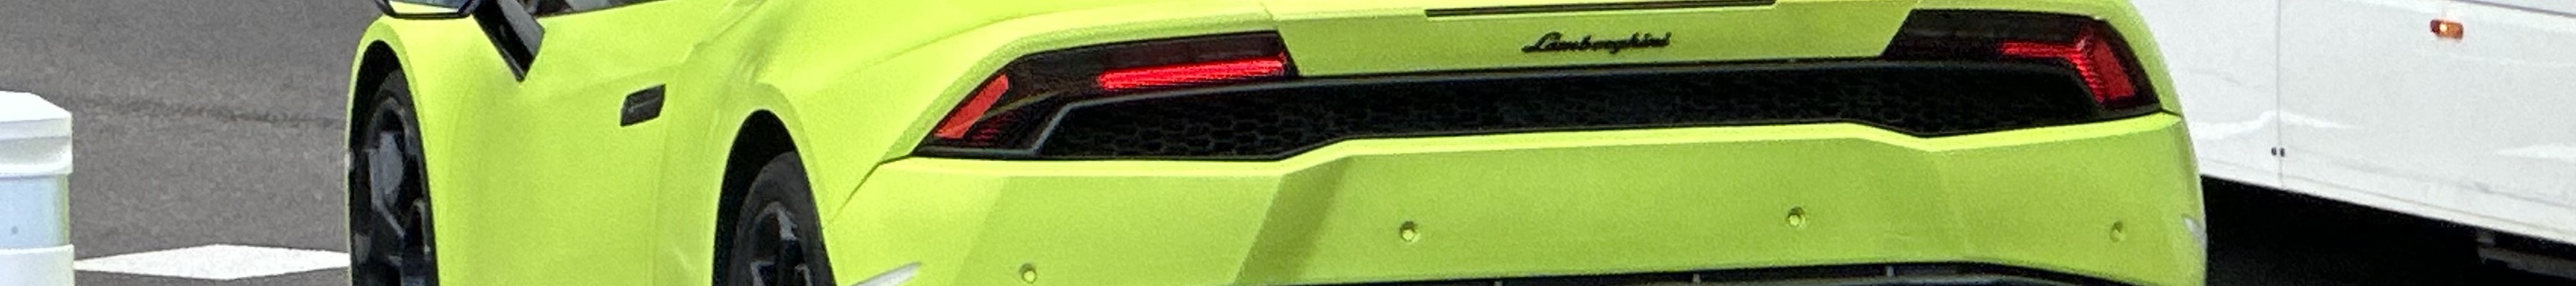 Lamborghini Huracán LP610-4